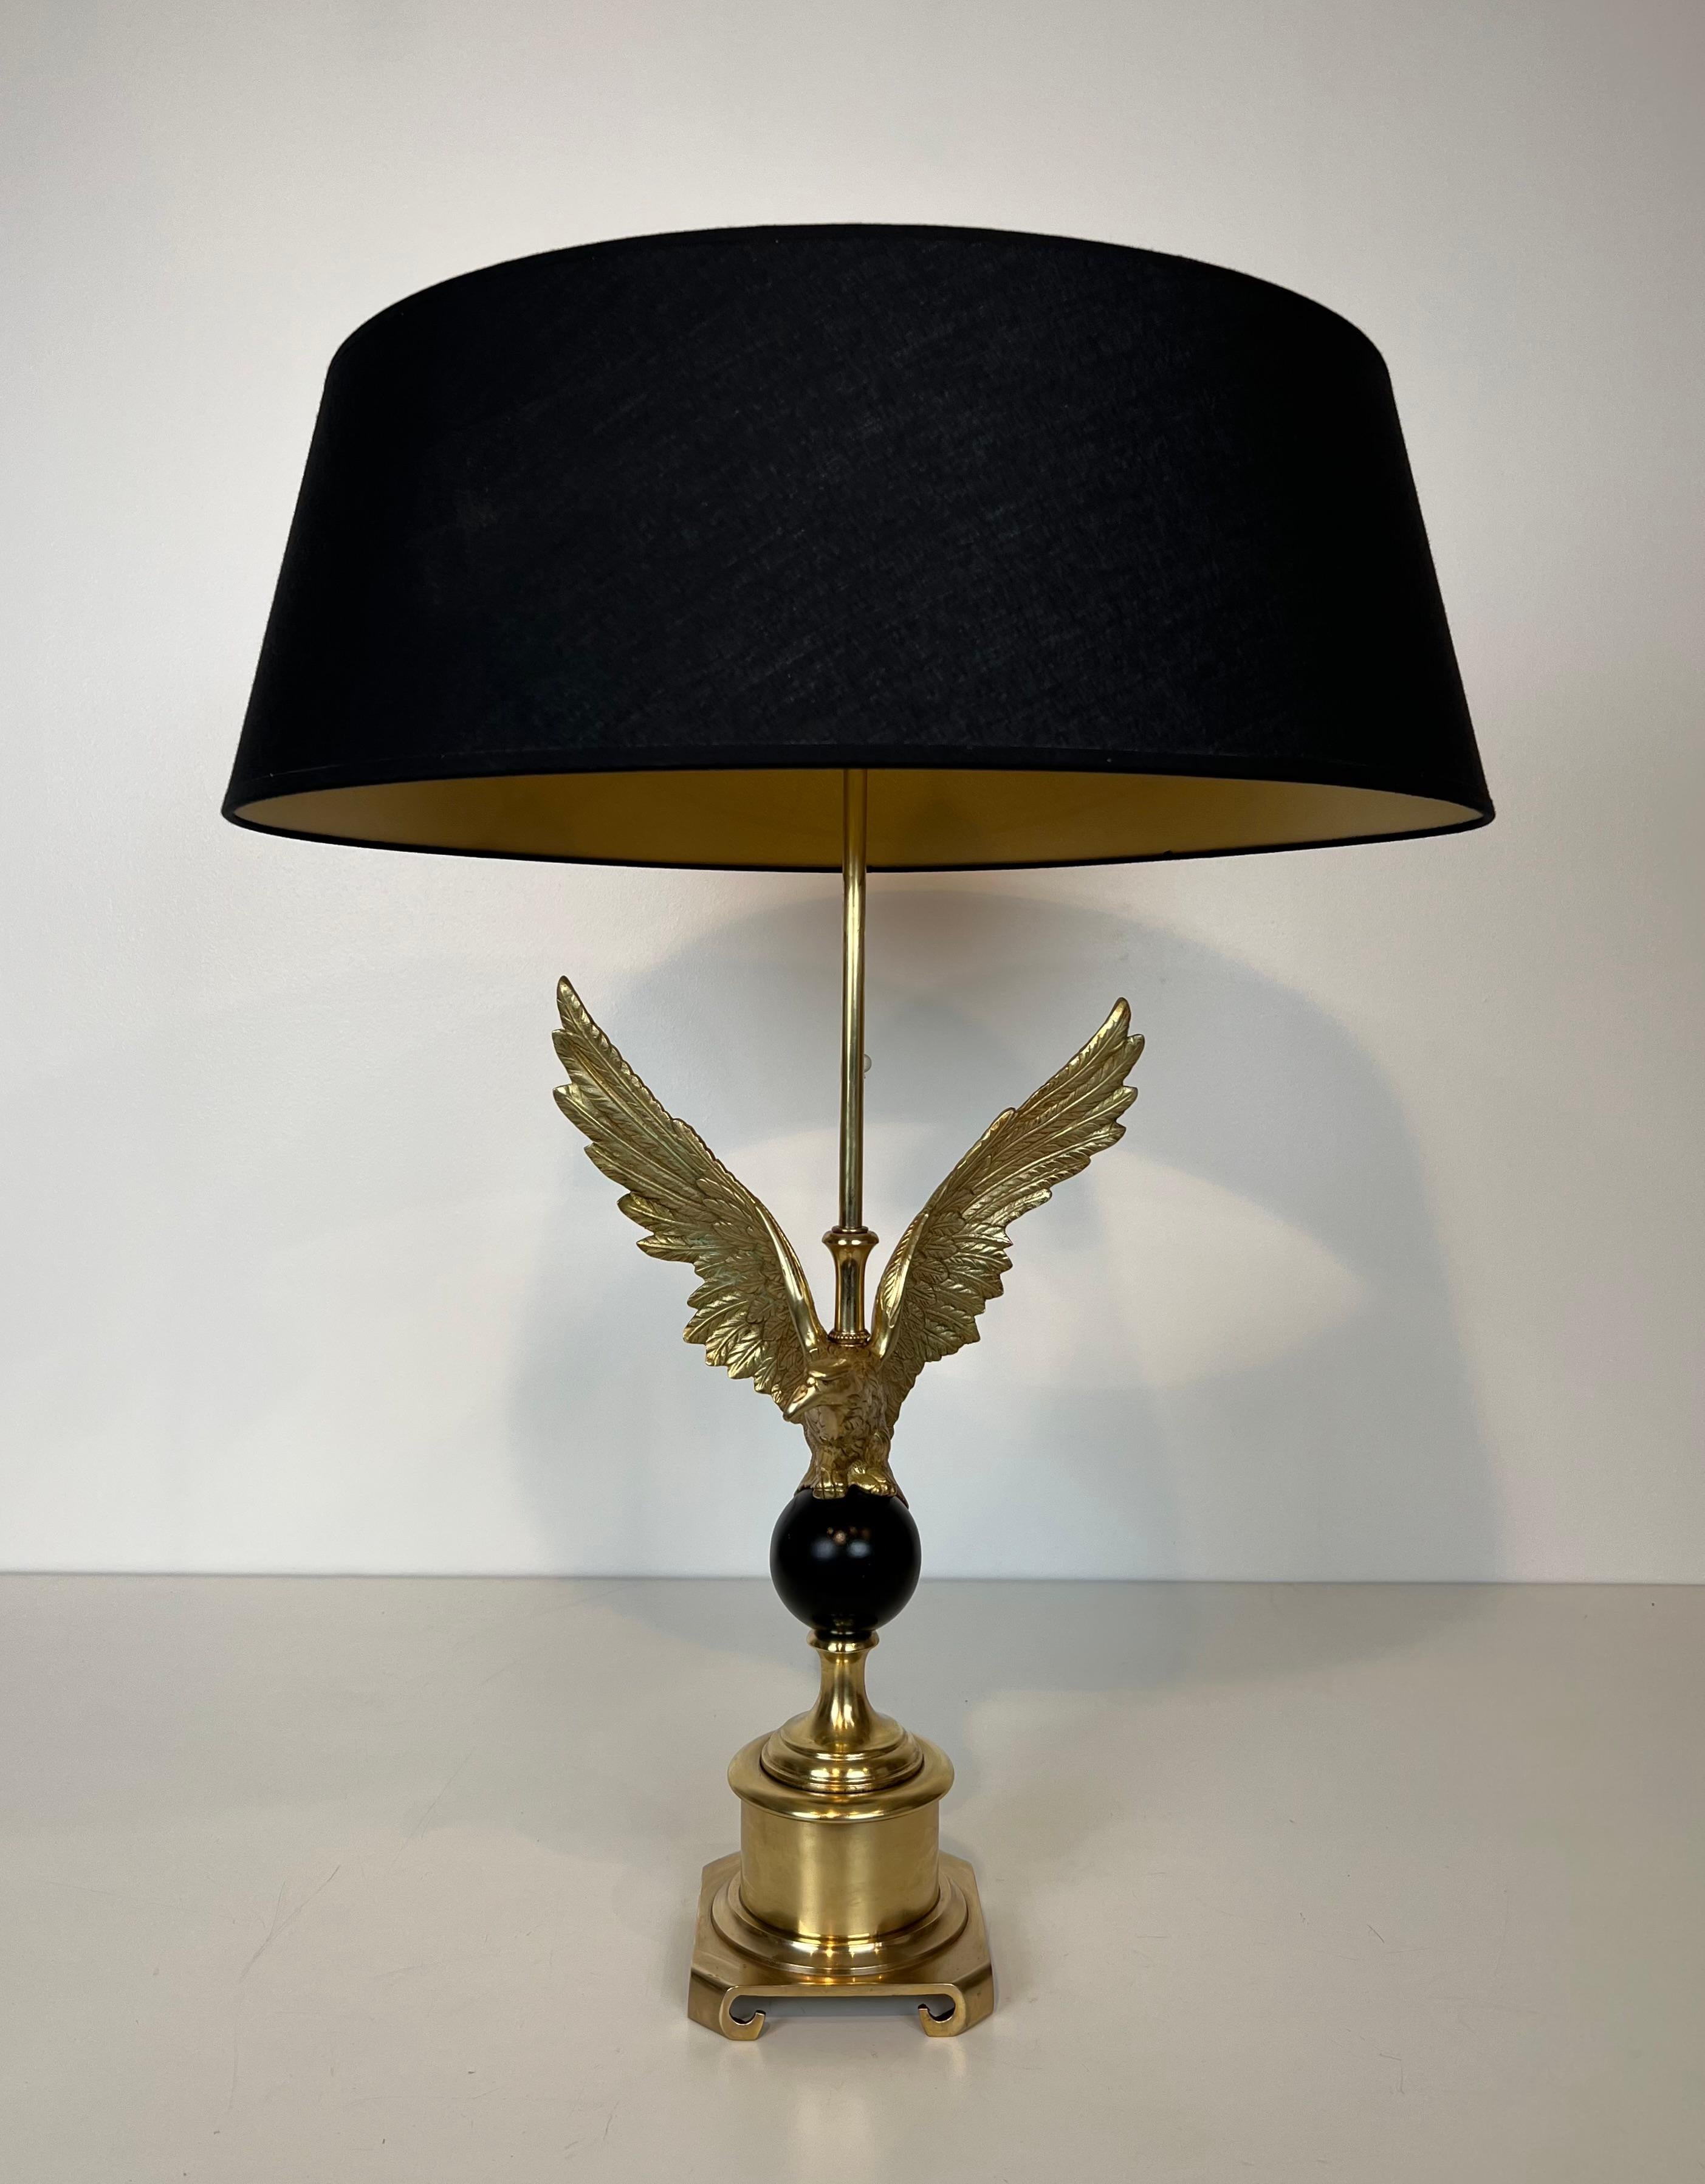 Cette lampe de table est fabriquée en bronze et en bronze laqué noir. La lampe représente un aigle royal de style Empire. Il s'agit d'un ouvrage français dans le style de la Maison Charles. Circa 1970